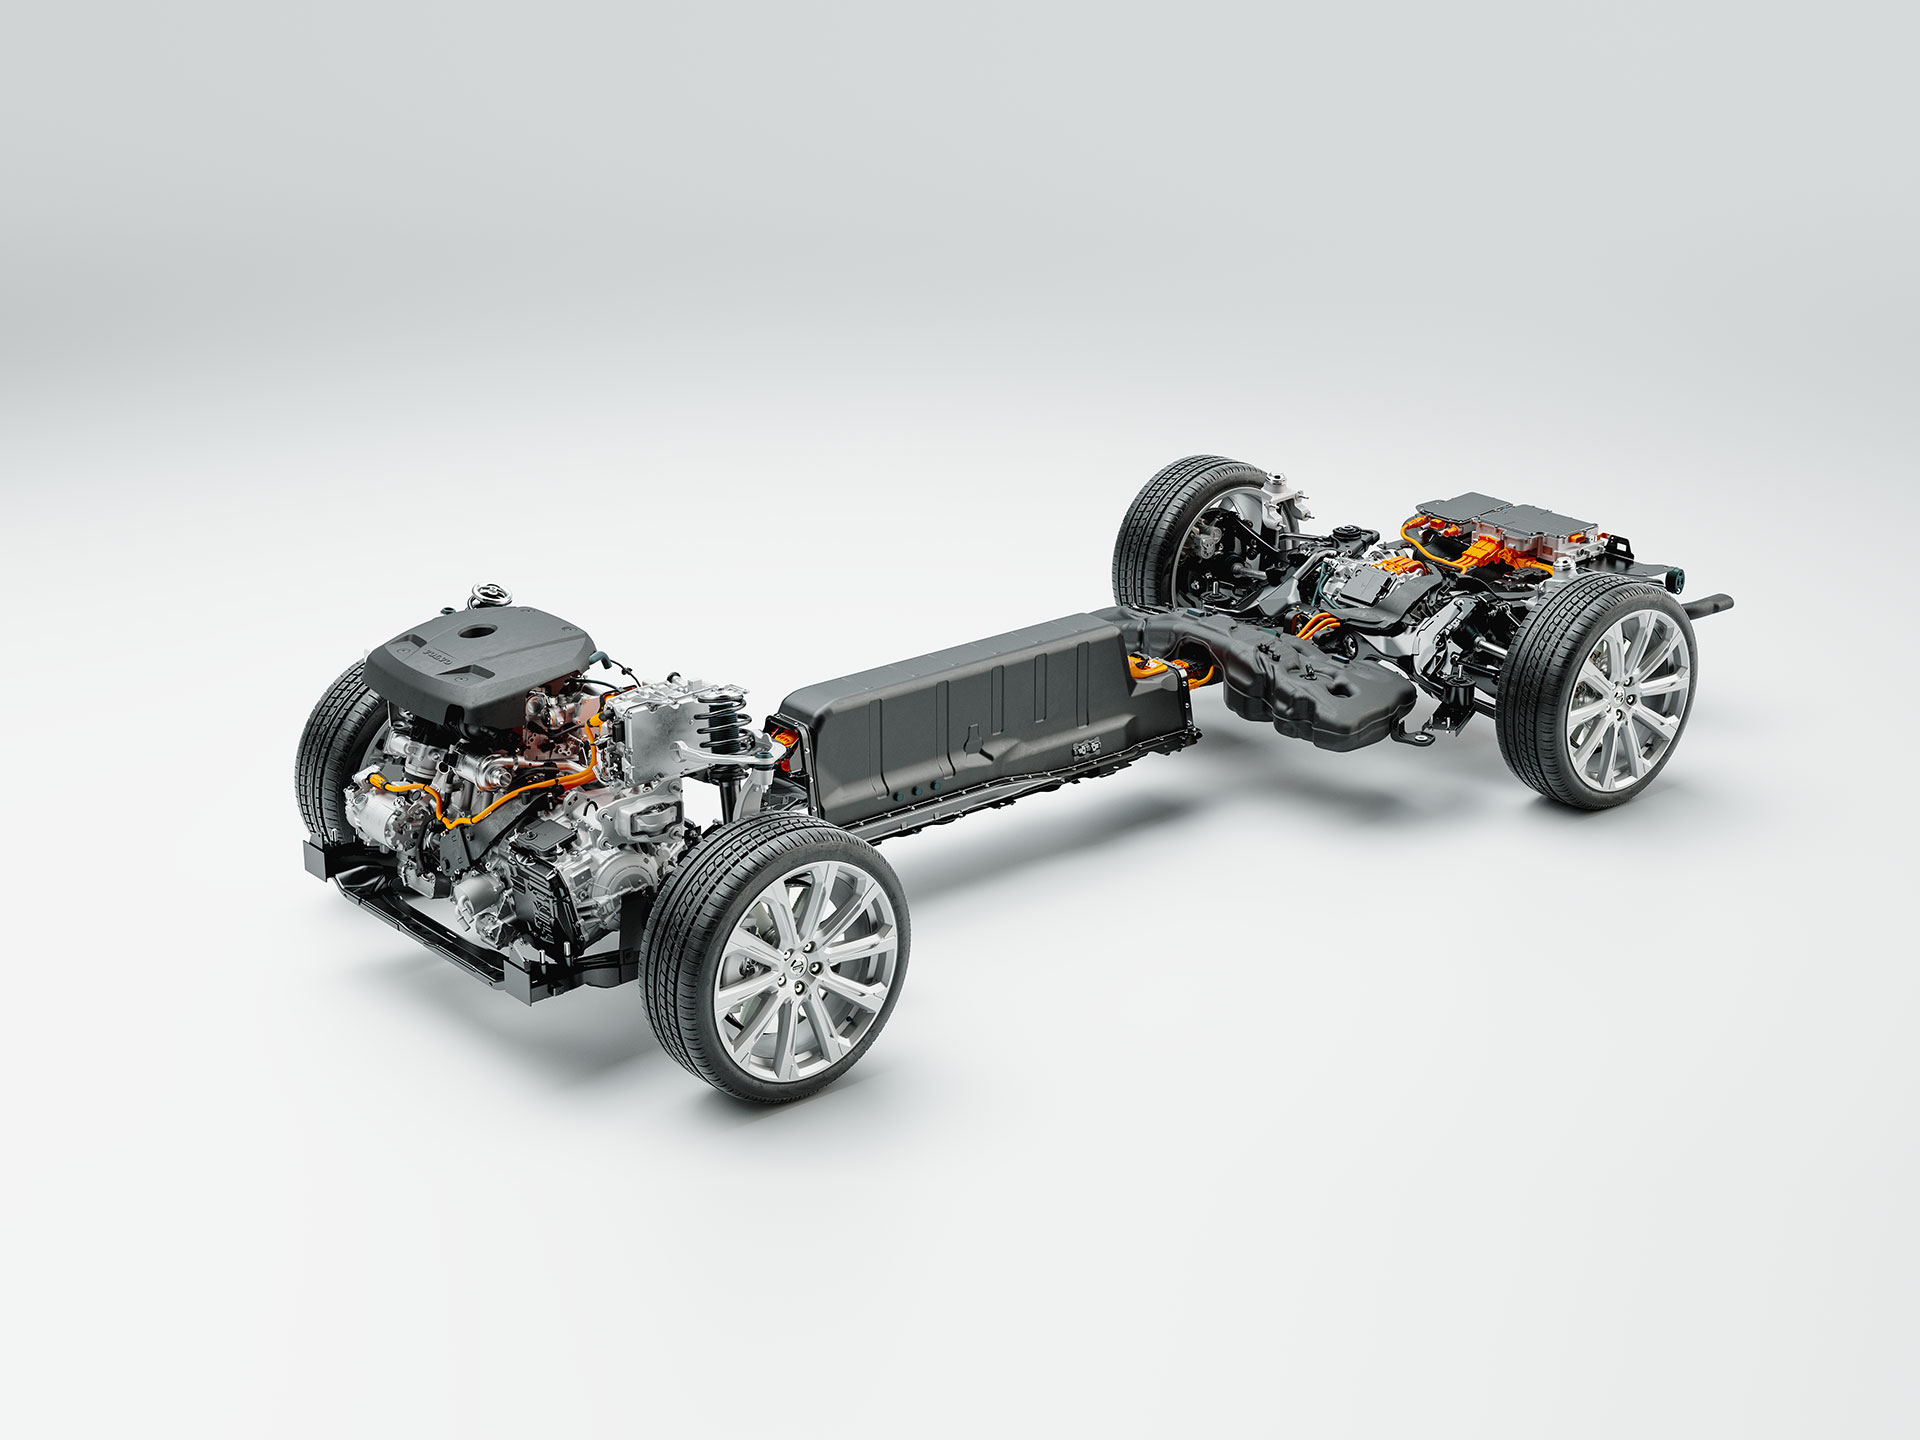 Technische detailfoto van chassis, accu en aandrijflijn van een Volvo plug-in hybride.